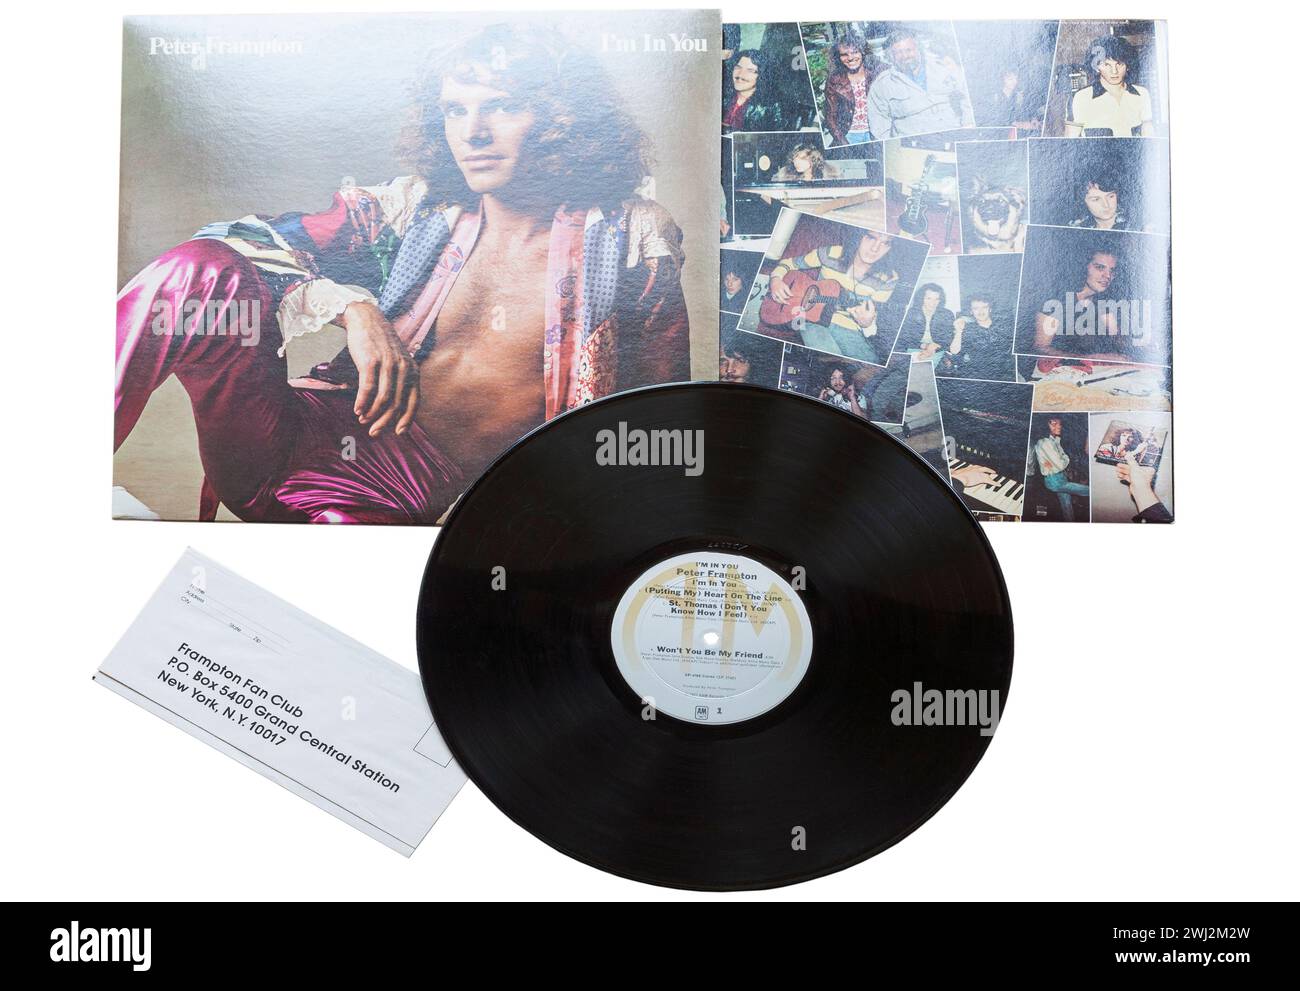 Peter Frampton i'm in You album vinile copertina LP isolata su sfondo bianco - 1977 Foto Stock